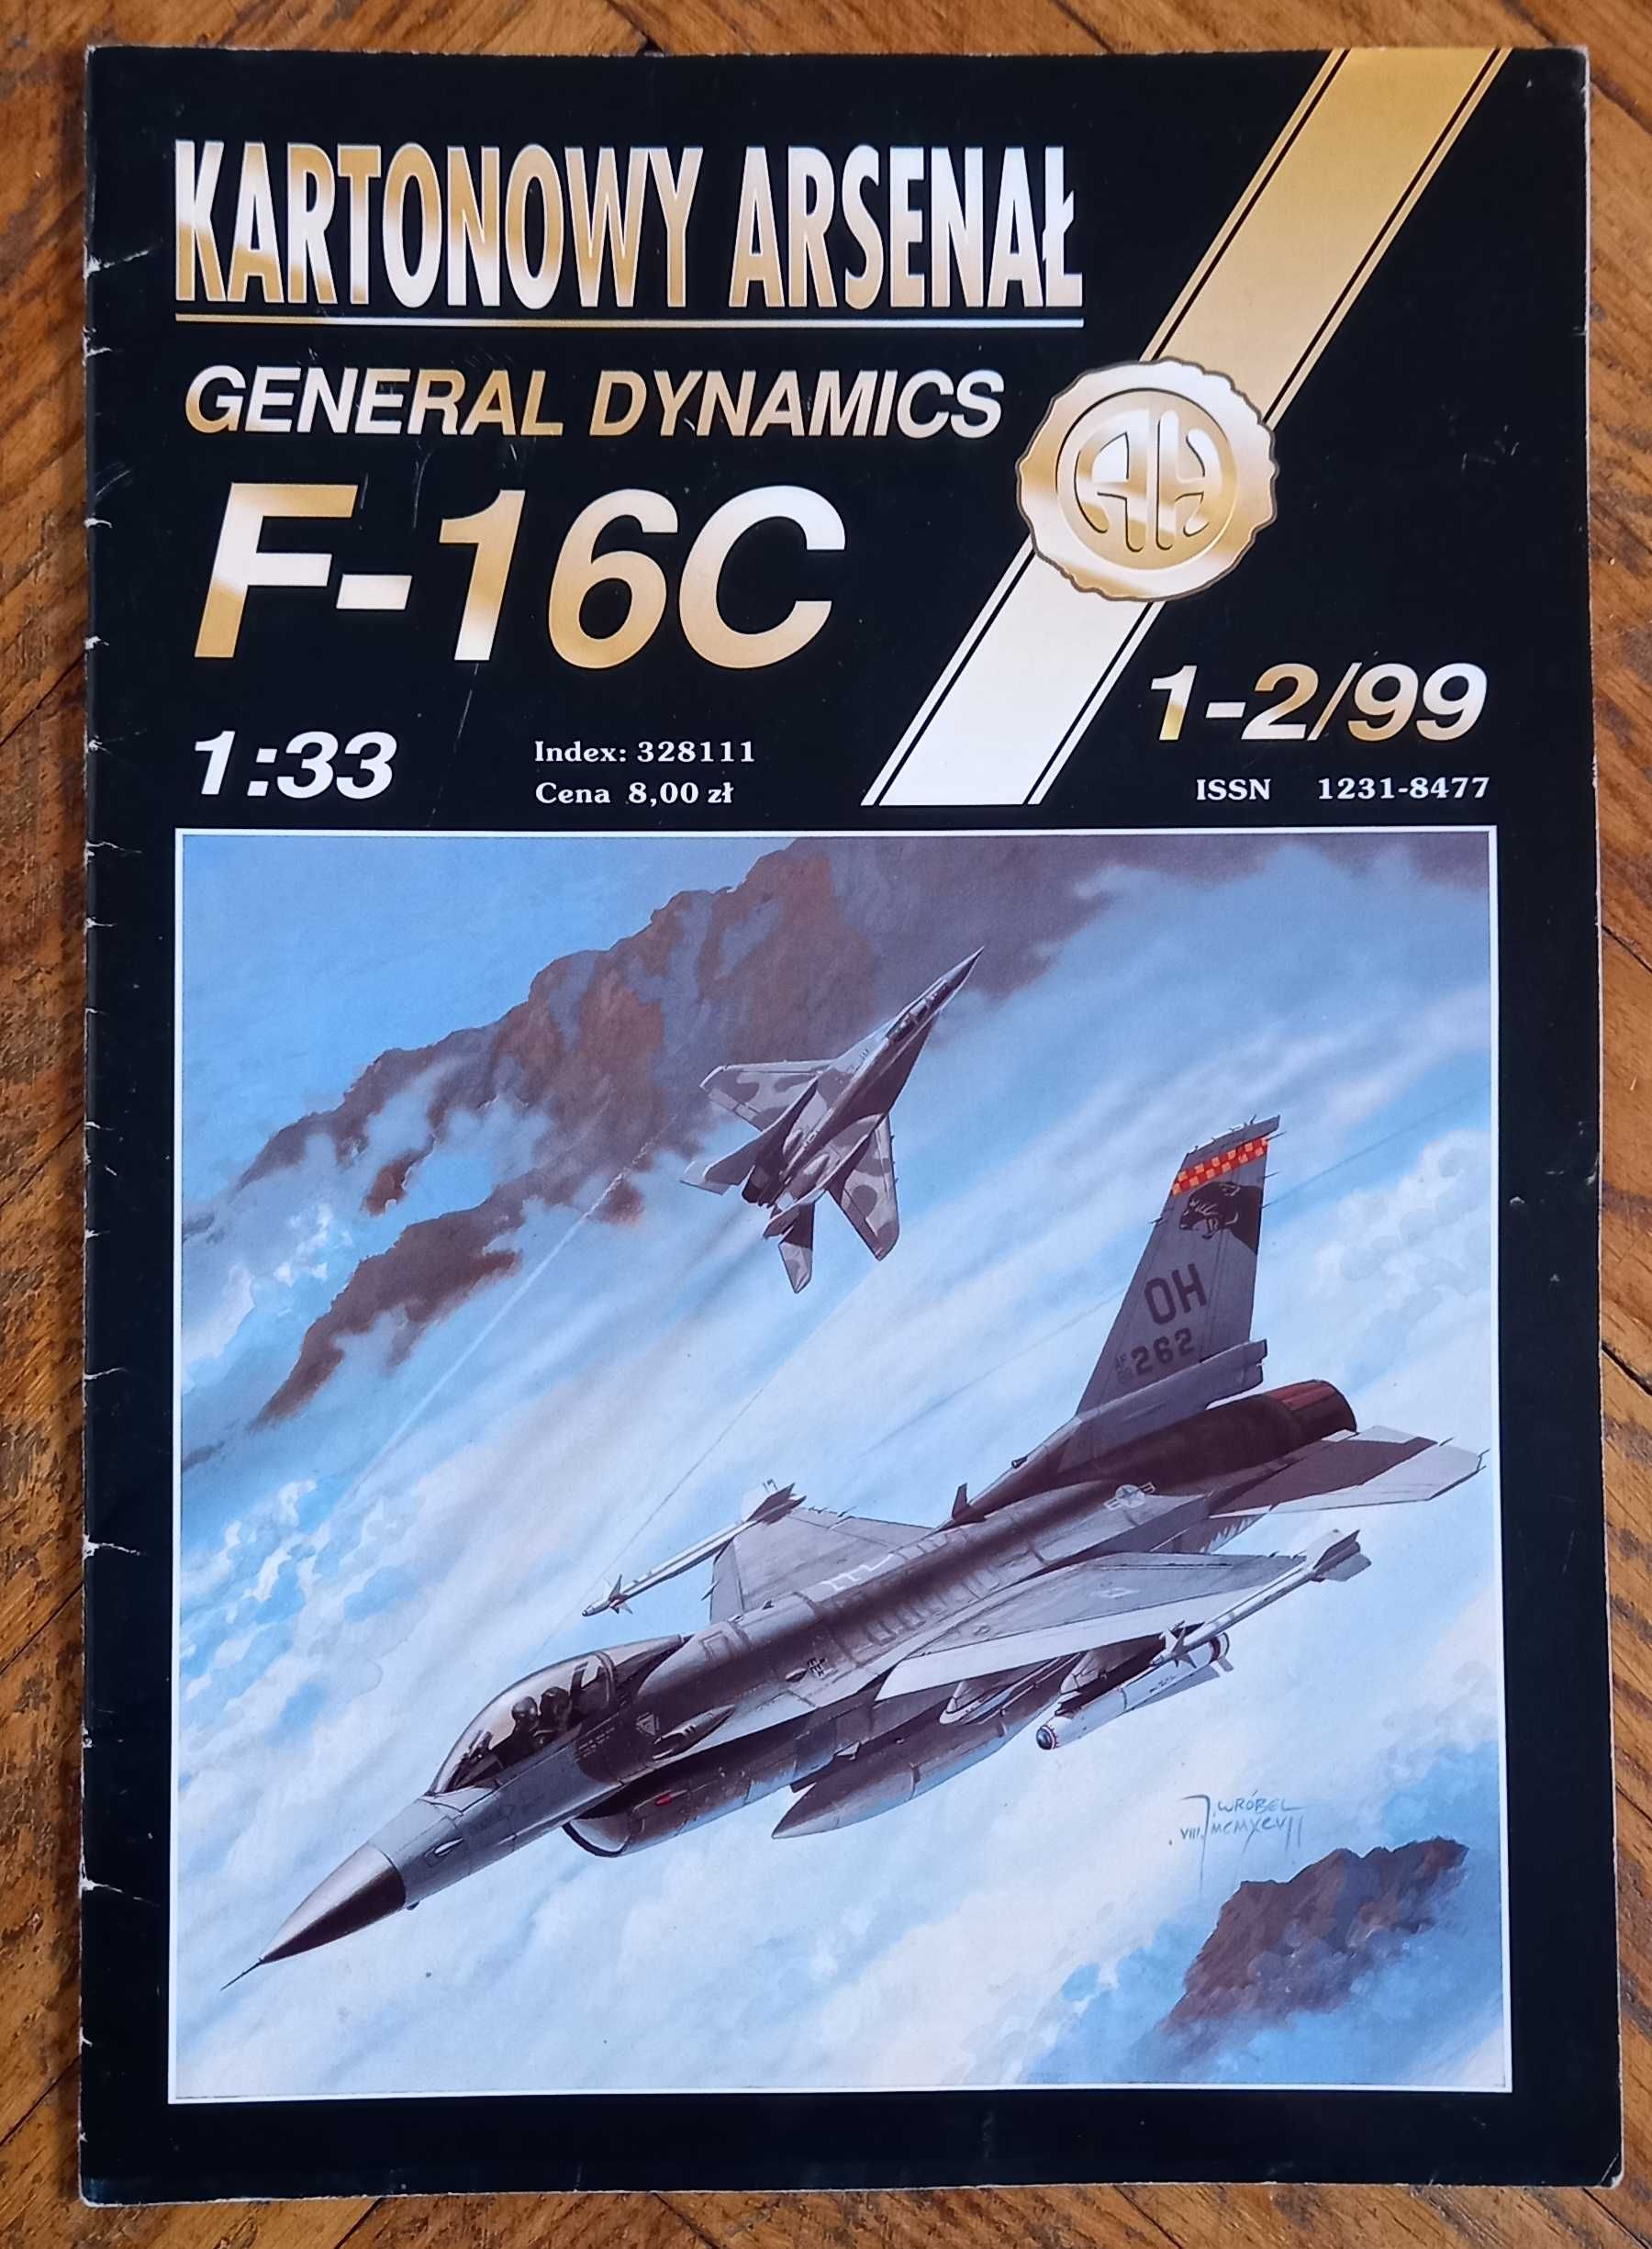 Model kartonowy, samolot F-16C, wyd. Kartonowy Arsenał.